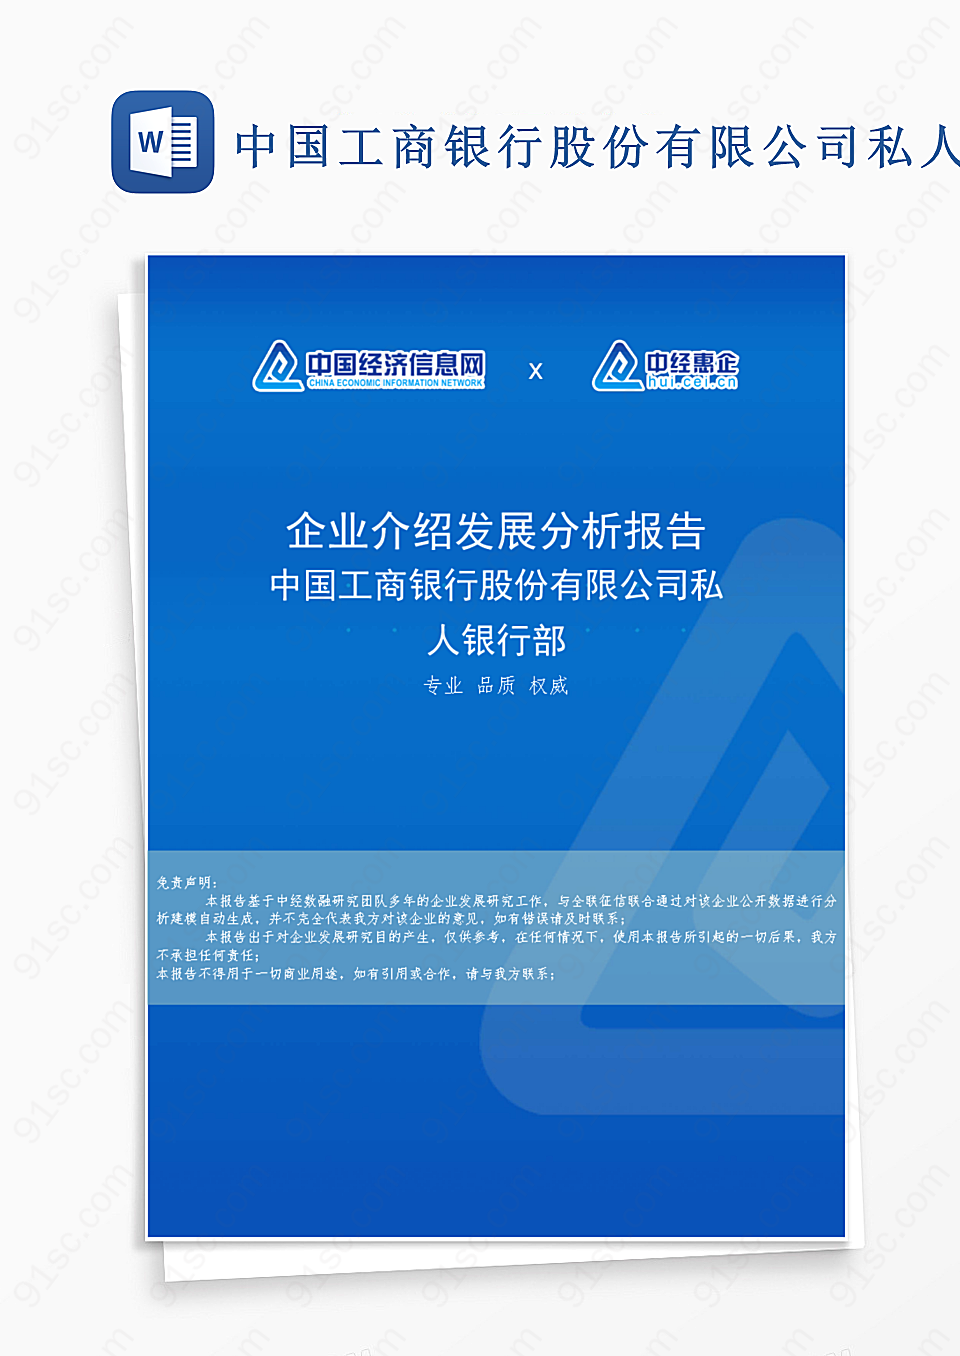 中国工商银行私人银行部企业成长发展分析报告概览工作范文Word模板下载